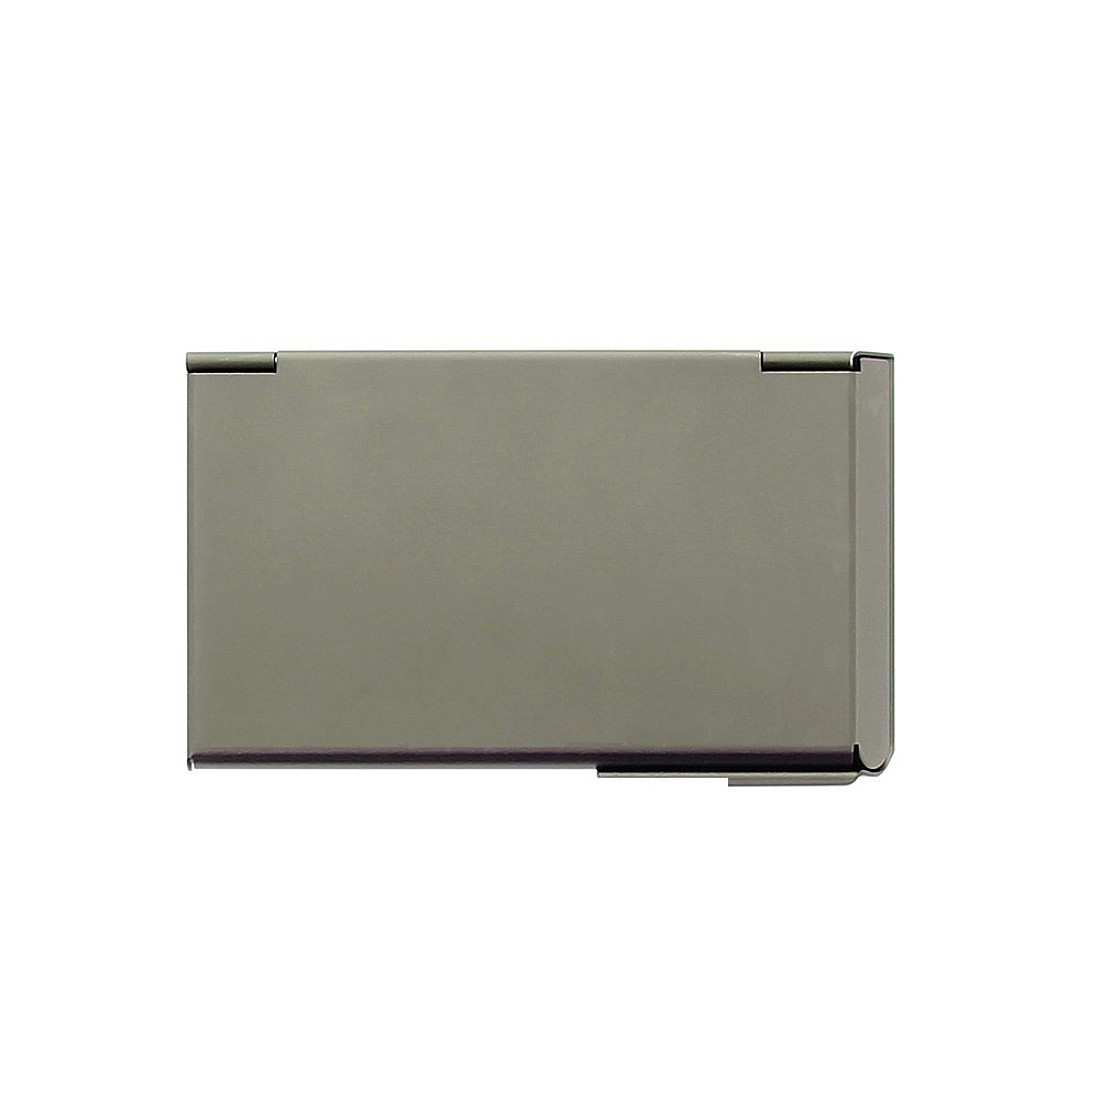 Ögon Designs One Touch Dark Grey Business Card Holder